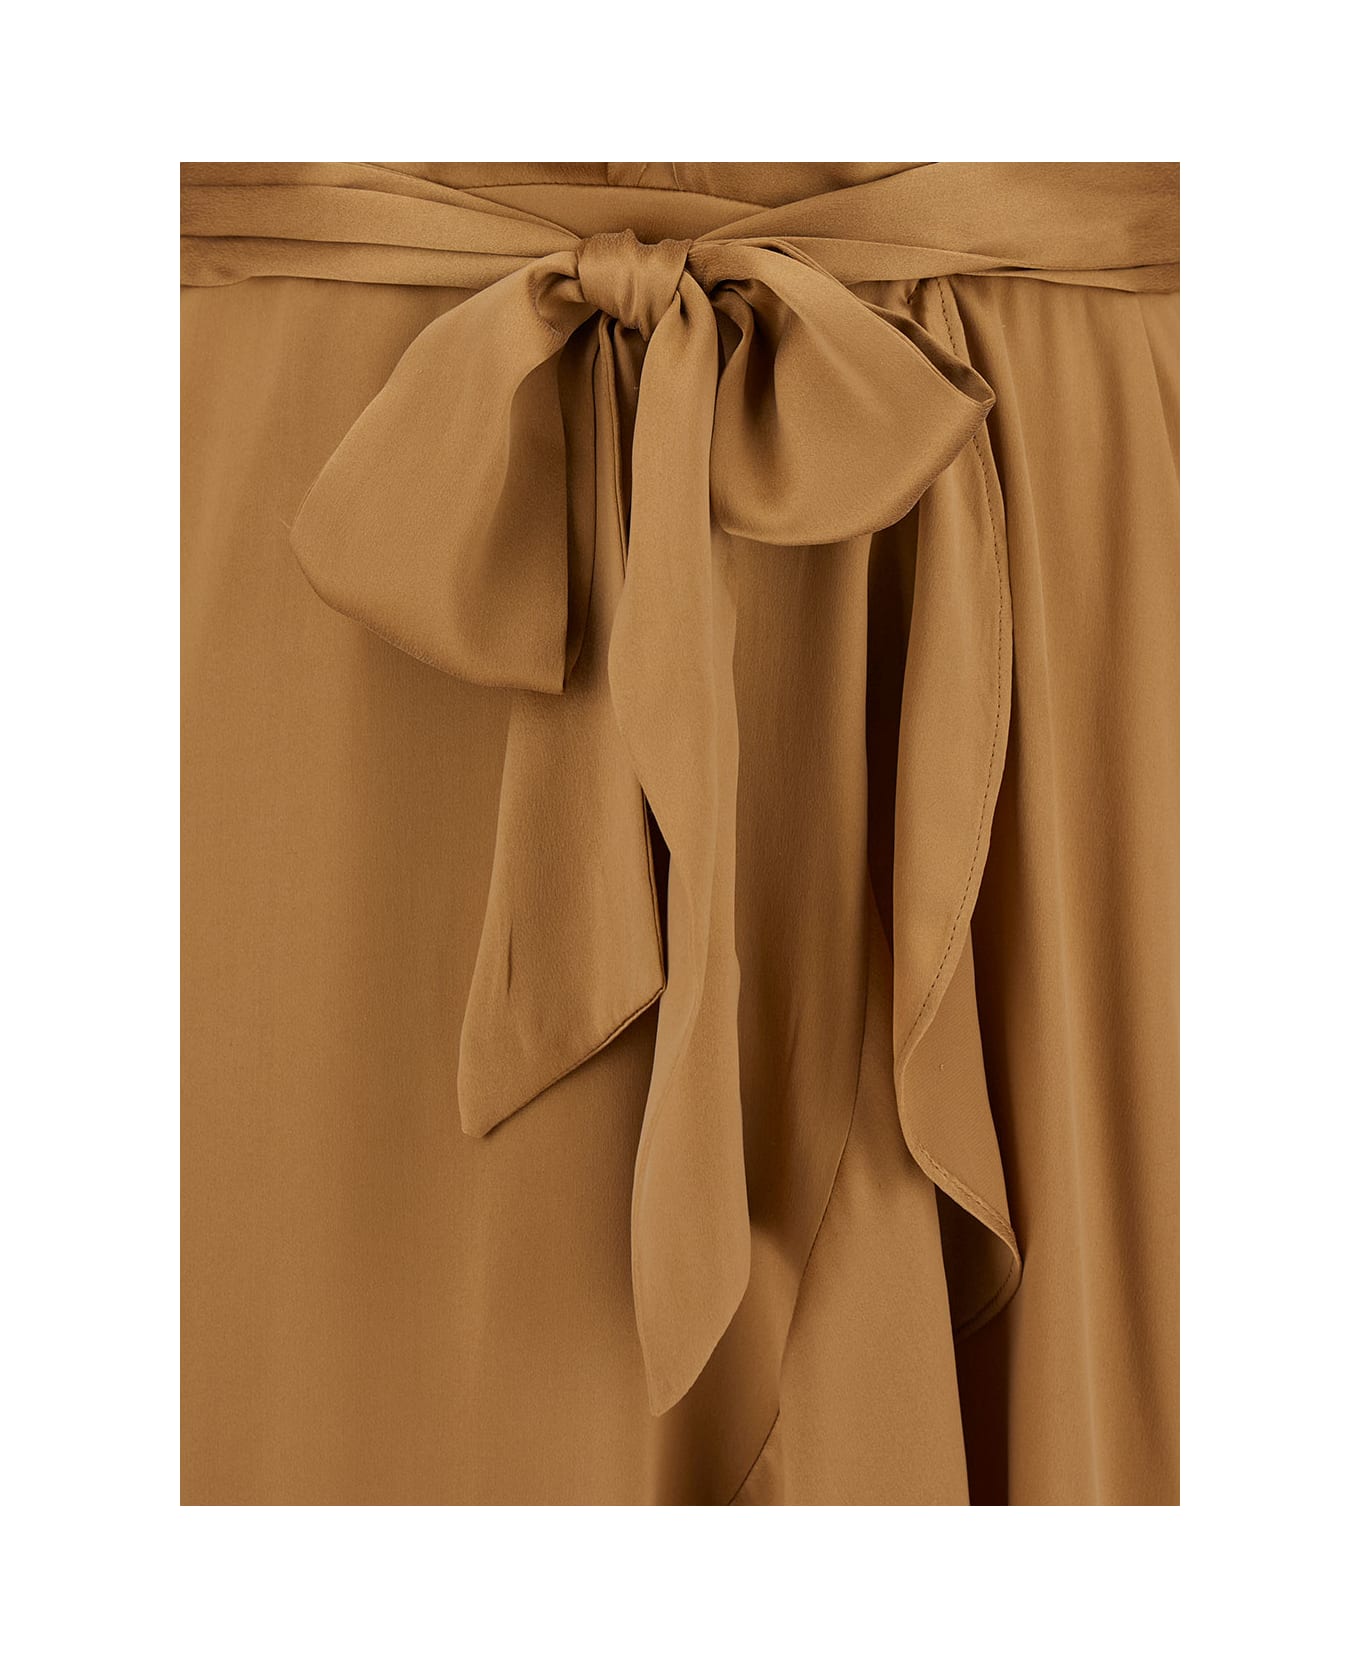 Zimmermann Midi Asymmetric Beige Dress With Belt In Silk Woman - NEUTRALS